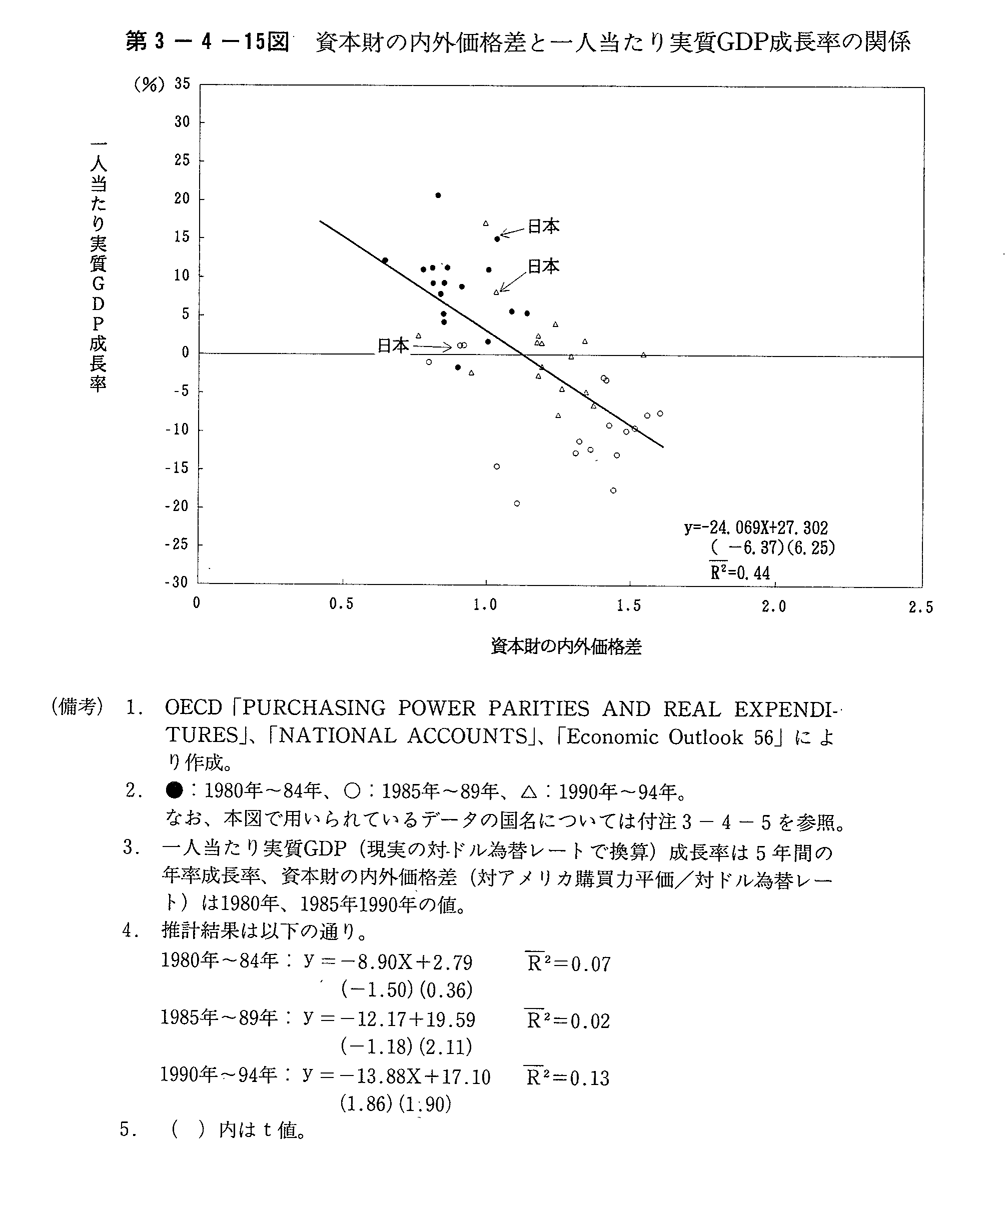 第3-4-15図 資本財の内外価格差と一人当たり実質GDP成長率の関係